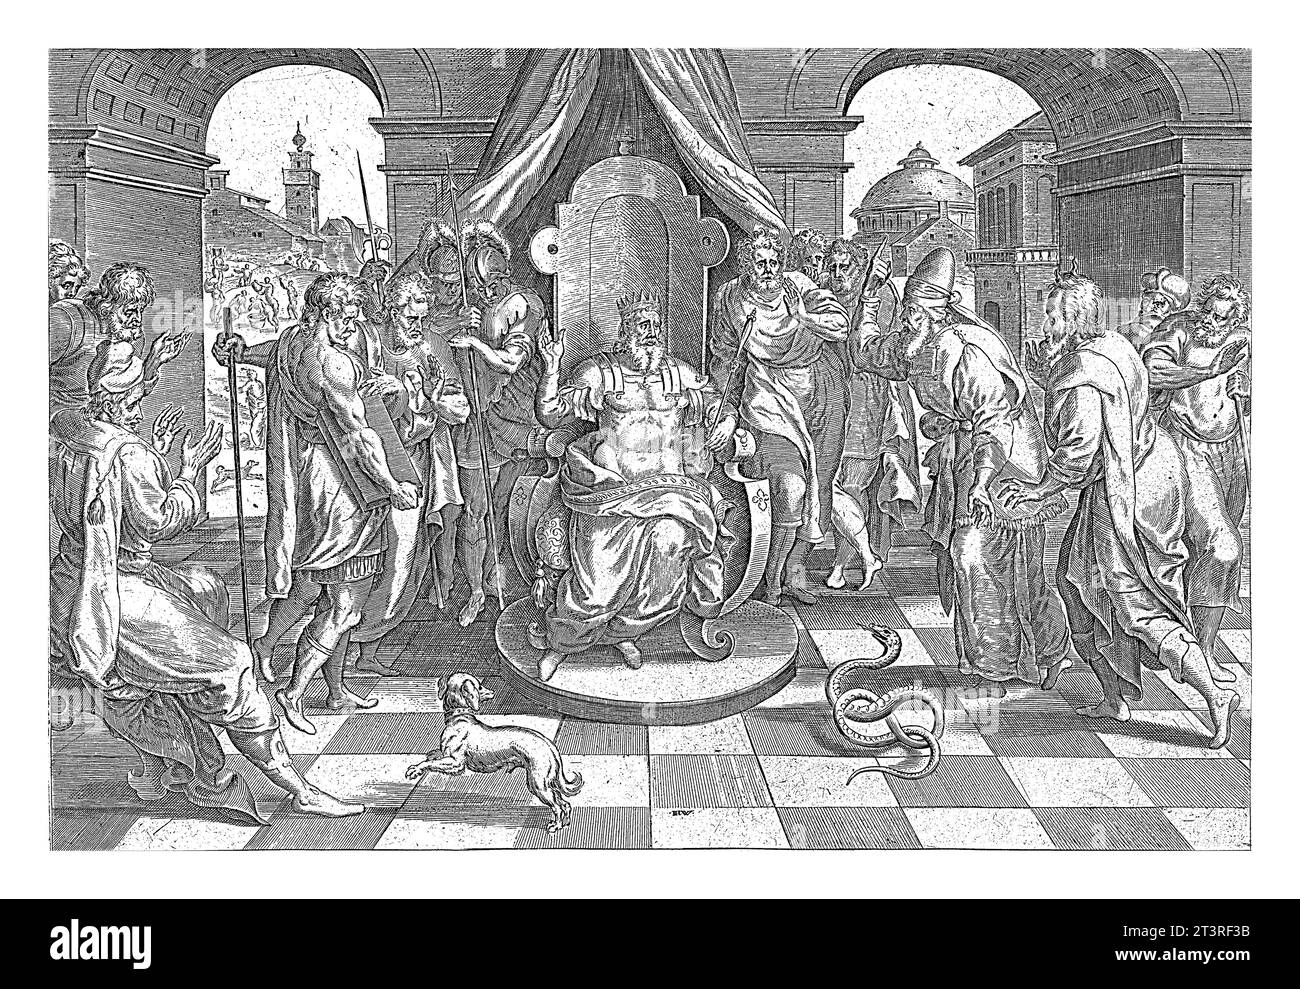 Moïse et Aaron avec le Pharaon Johannes Wierix, d'après Marten van Cleve (I), 1639 Moïse et Aaron parlent avec le Pharaon. Aaron a jeté son personnel à t Banque D'Images